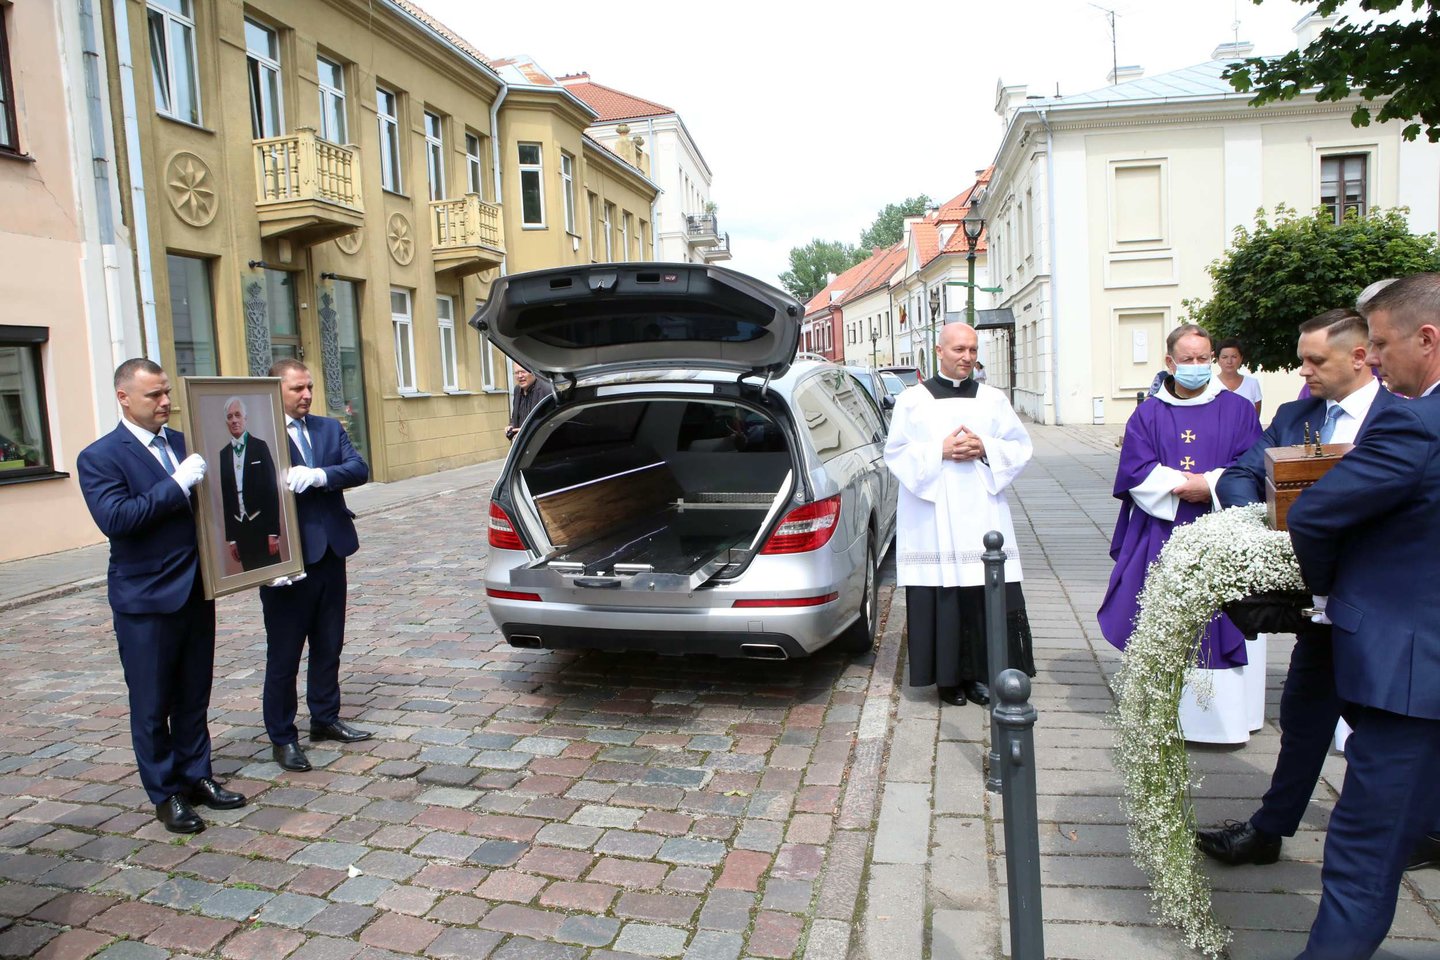  Laidotuvių ceremonija iš Kauno pasuko į Mardasavo kapines (Varėnos r.).<br> M.Patašiaus nuotr.